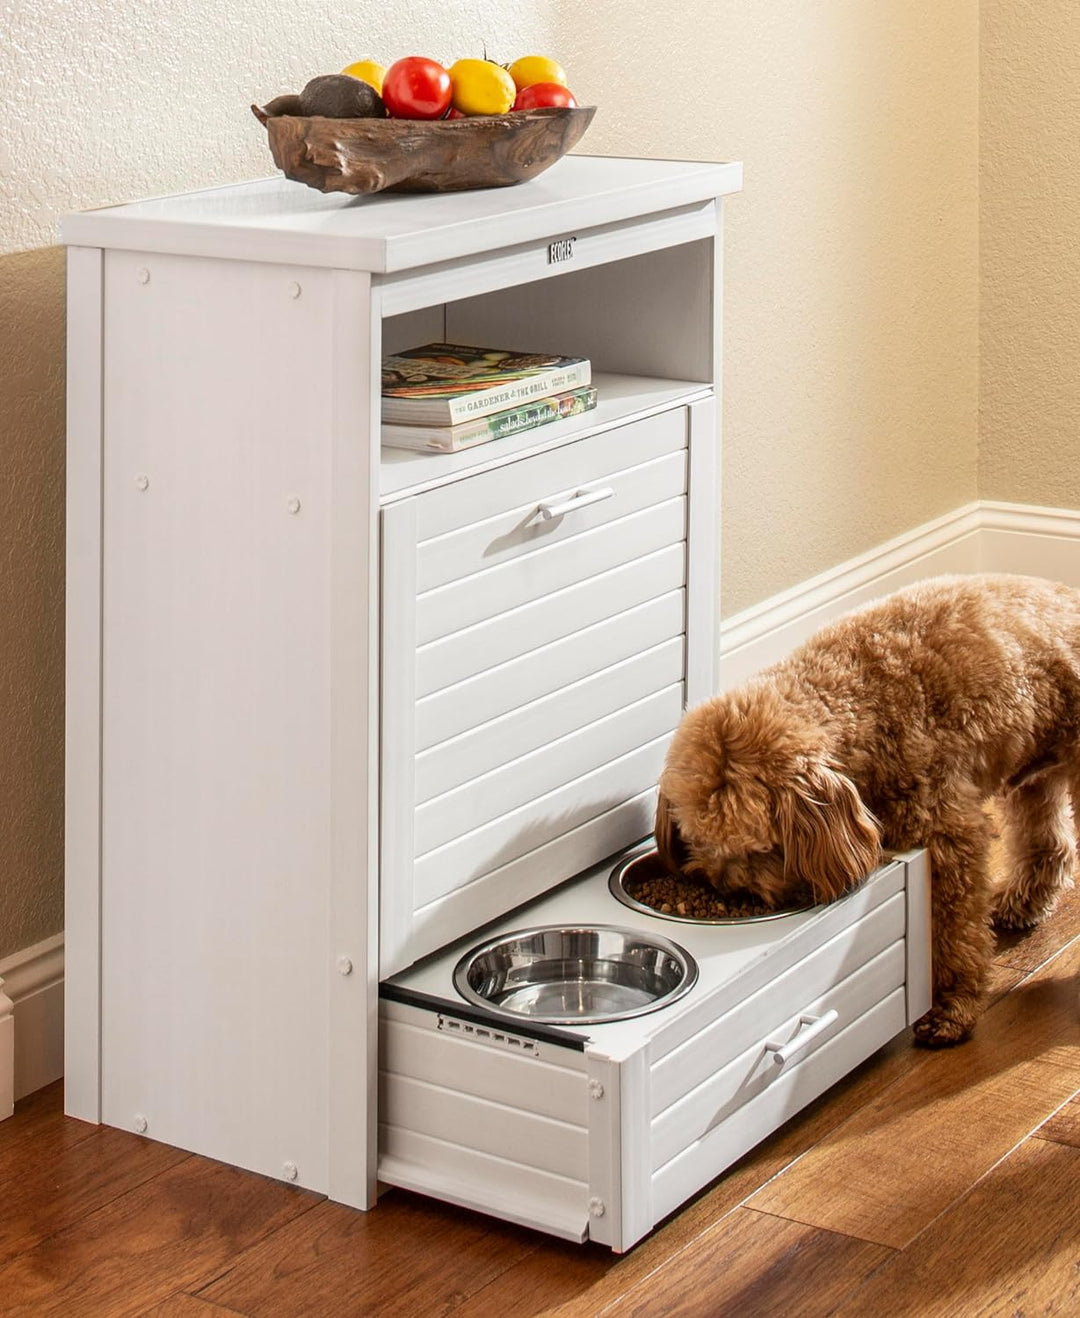 dog food storage with feeding bowls in drawer